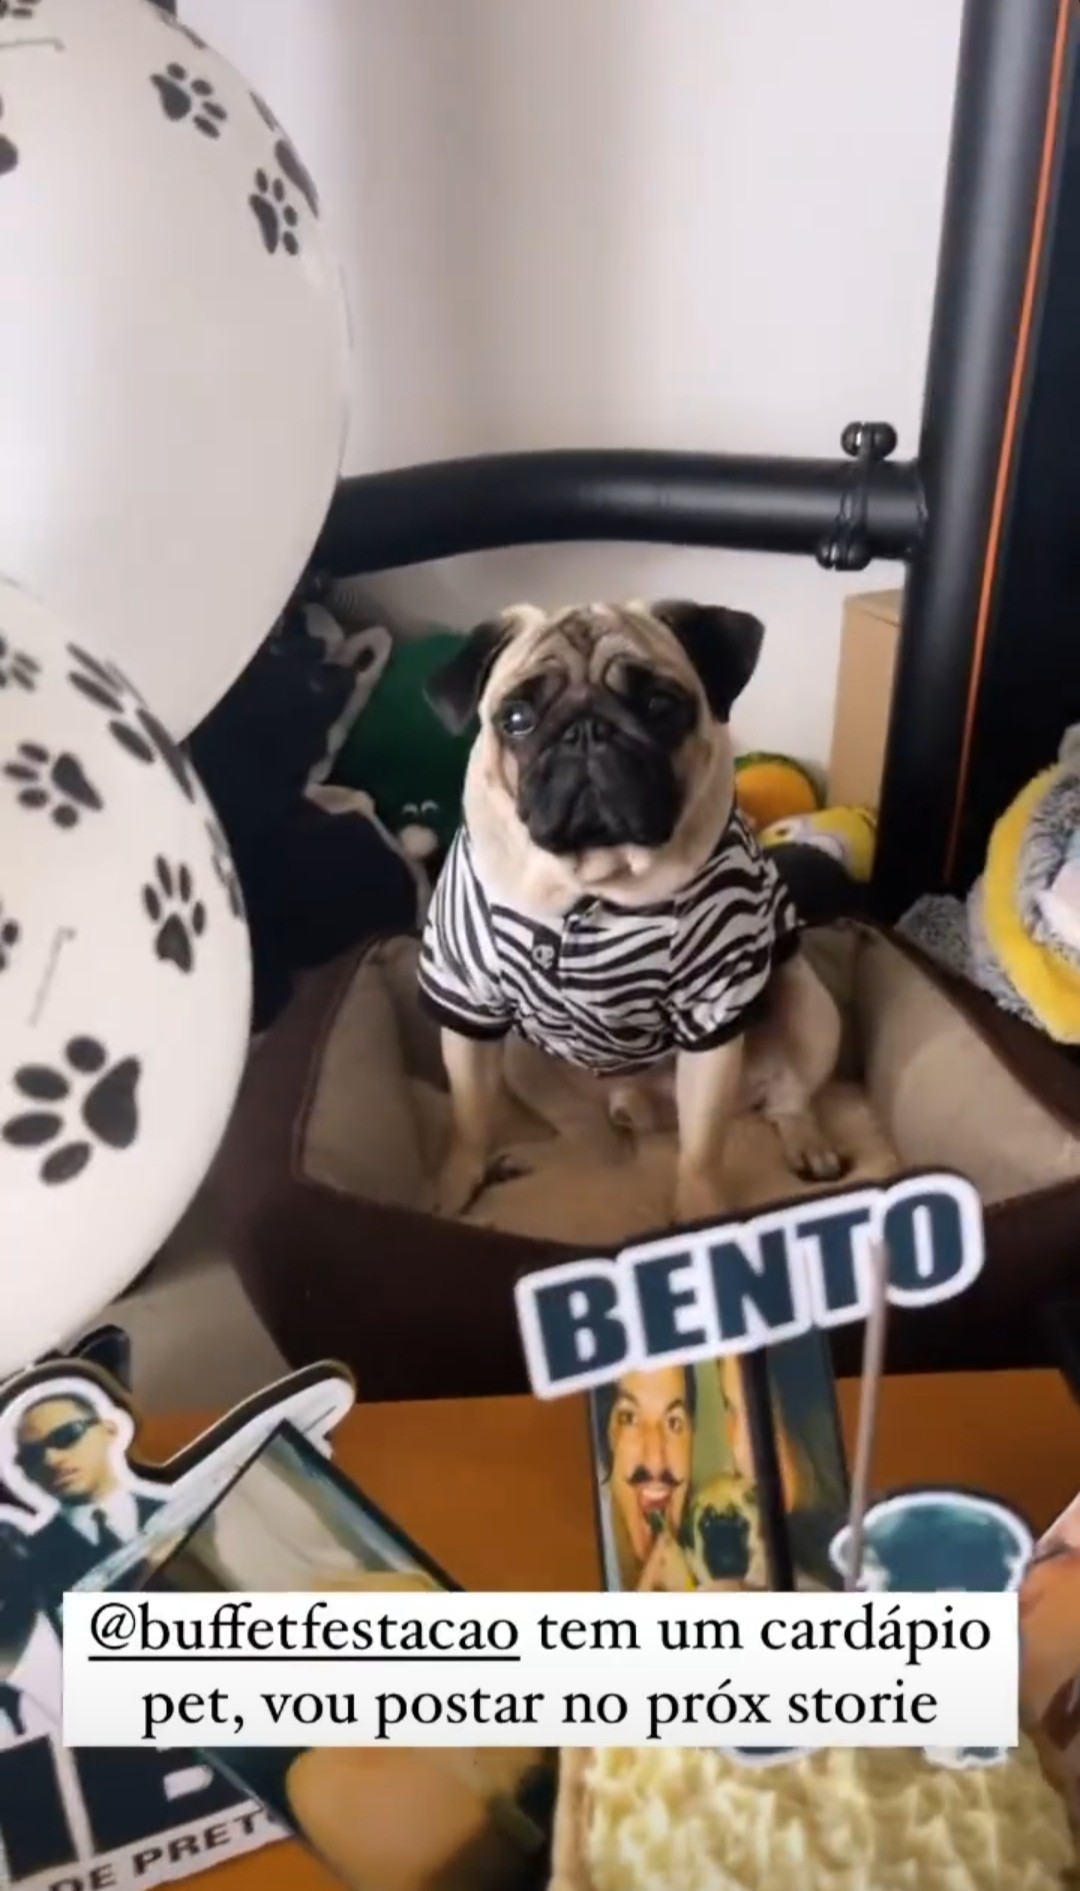 Priscila Fantin e Bruno Lopes celebraram 3 anos de Bento (Foto: Reprodução/Instagram)